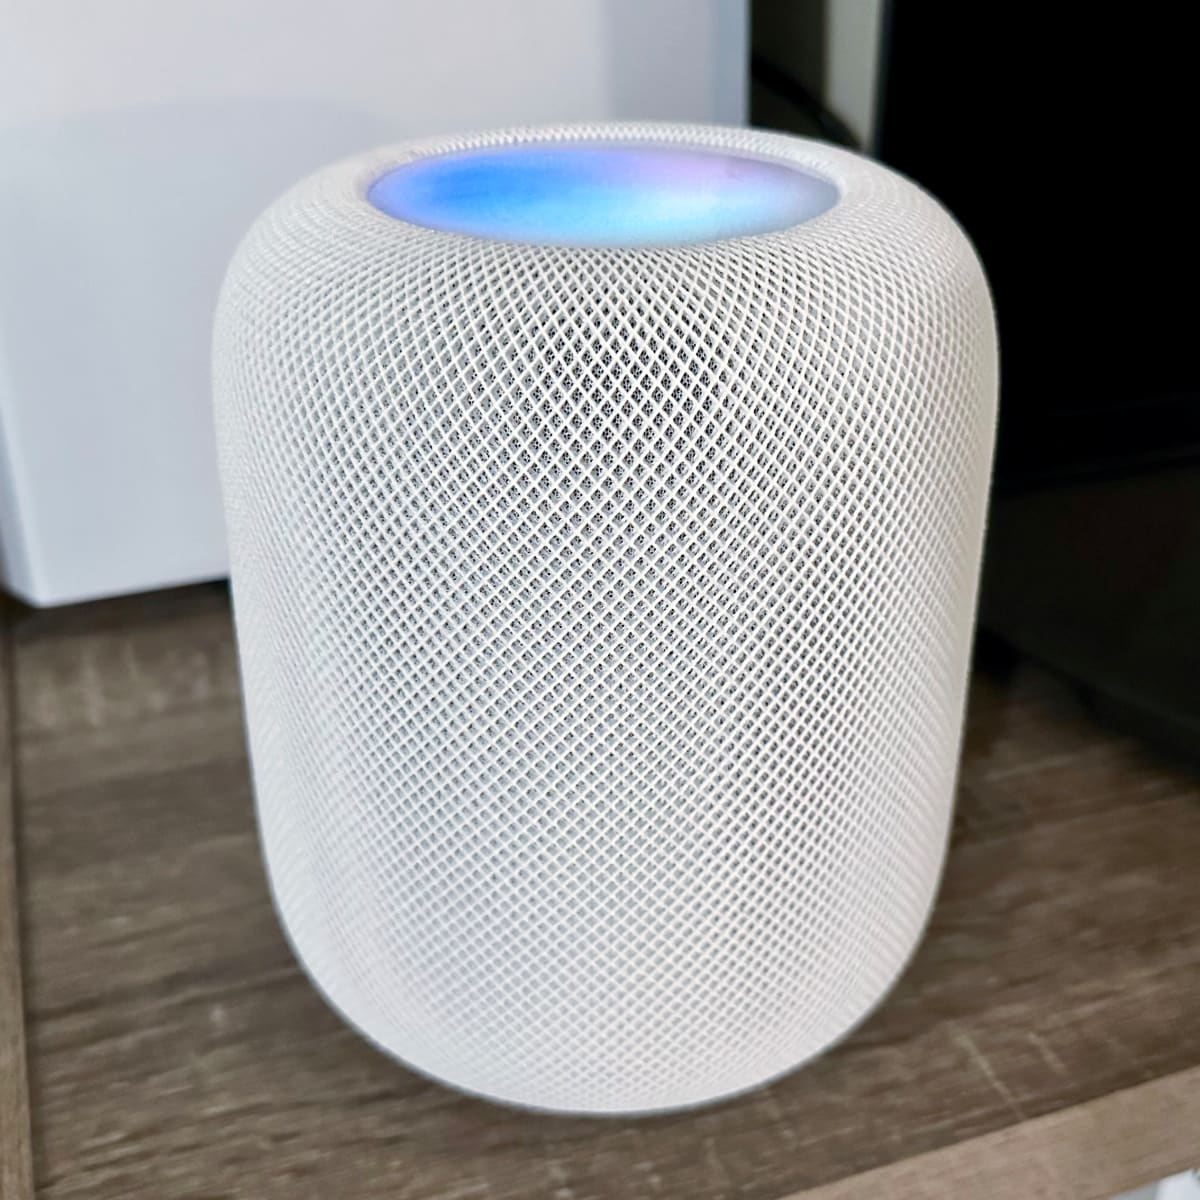 Apple HomePod (2nd gen) review: A smarter smart speaker